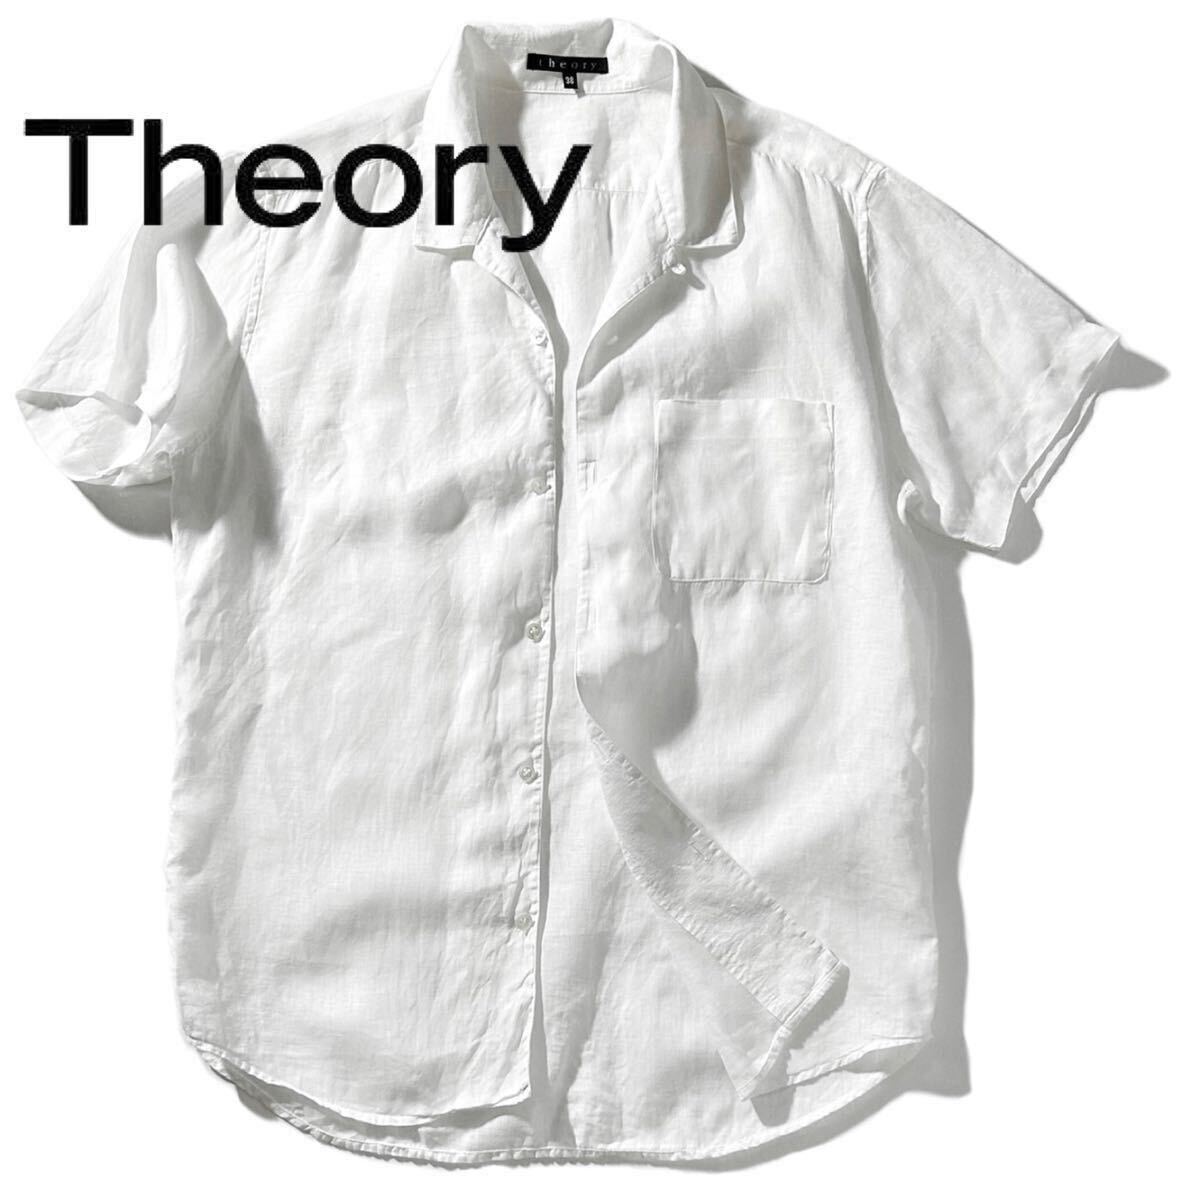 【Theory】清涼感バツグンの白無地オープンカラーシャツ◎!!セオリー リネンオープンカラーシャツ 白シャツ 半袖 リネンシャツ 開襟シャツ _画像1